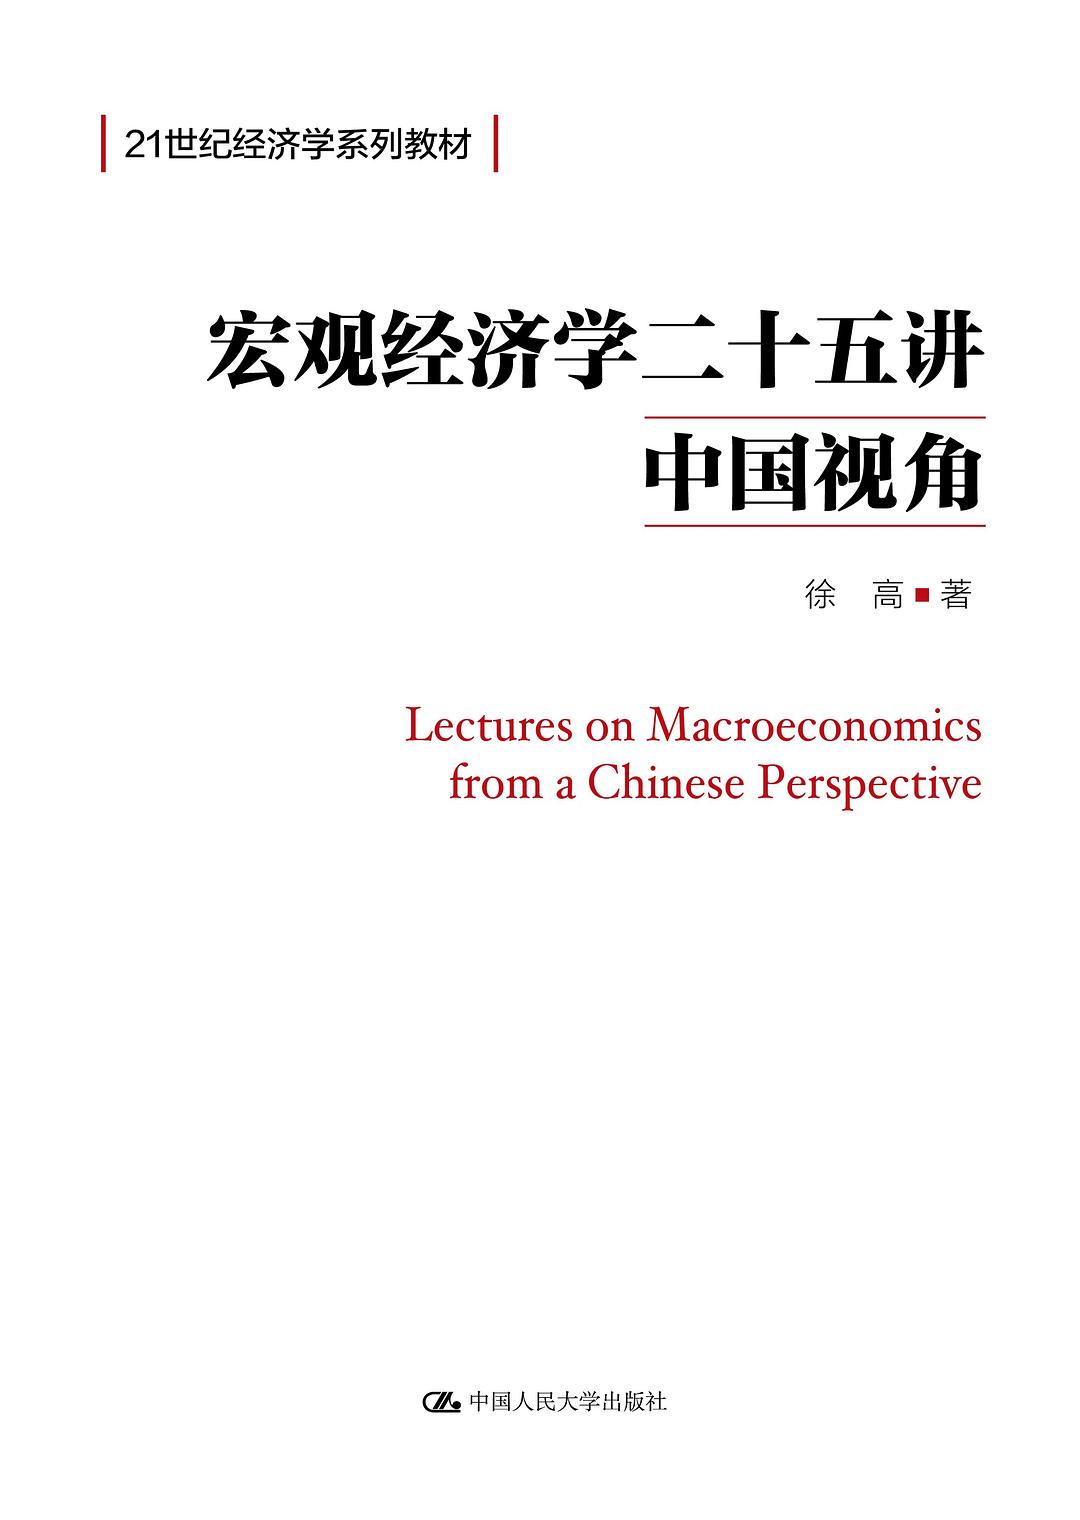 宏观经济学二十五讲-好书天下